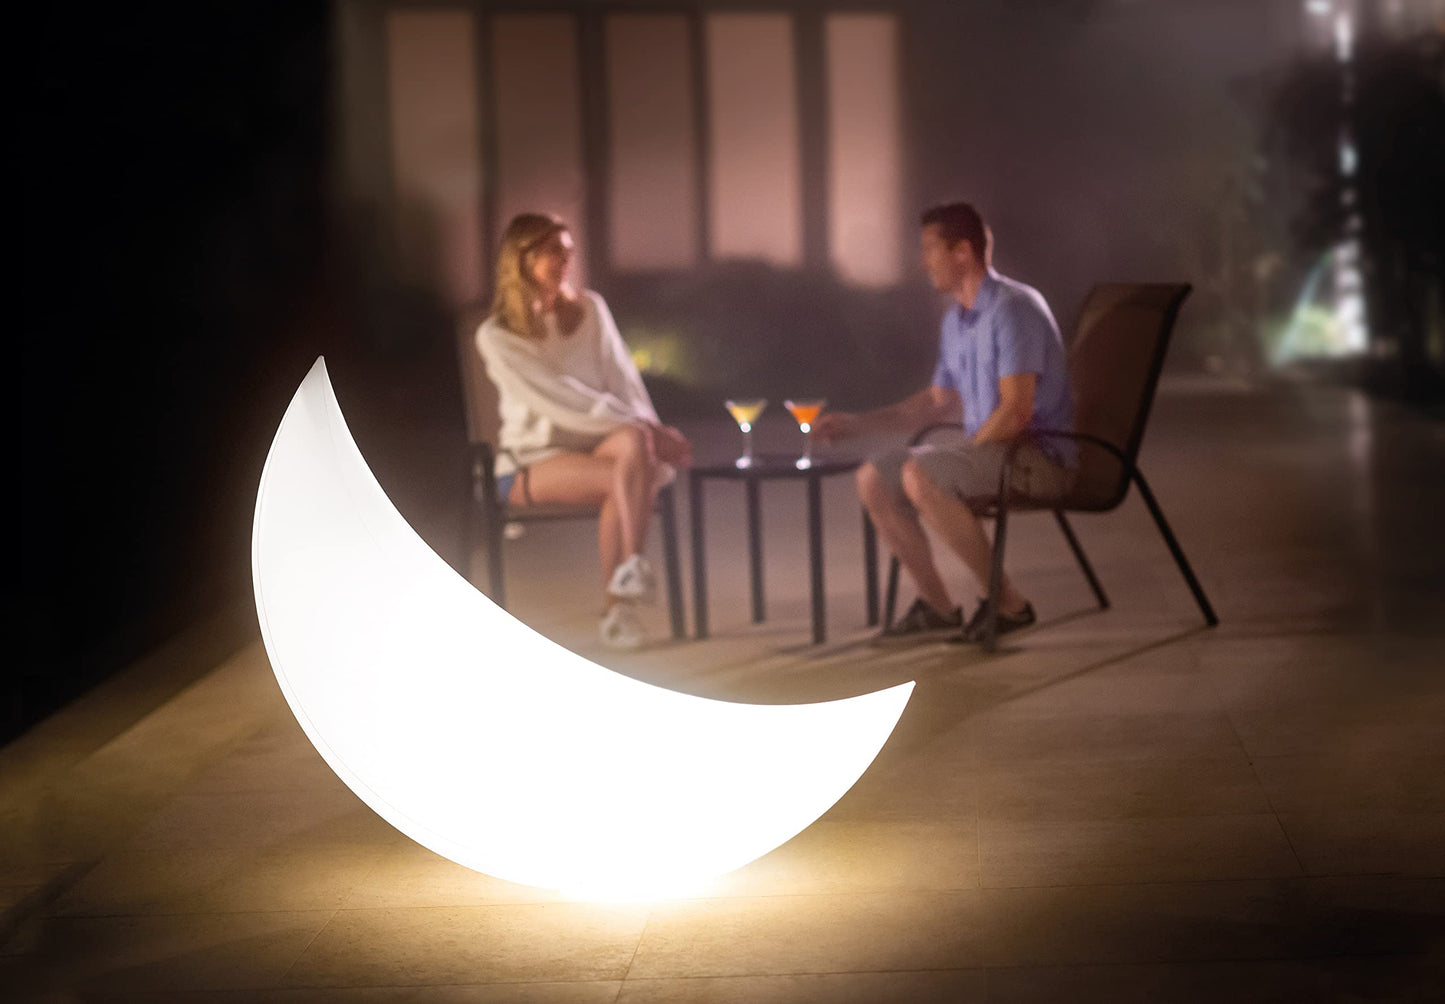 Intex Giant Moon Lampe LED Flottante 6 Couleurs, 135 x 43 x 89 cm, Parfait pour l'éclairage de Jardin Floating Moon